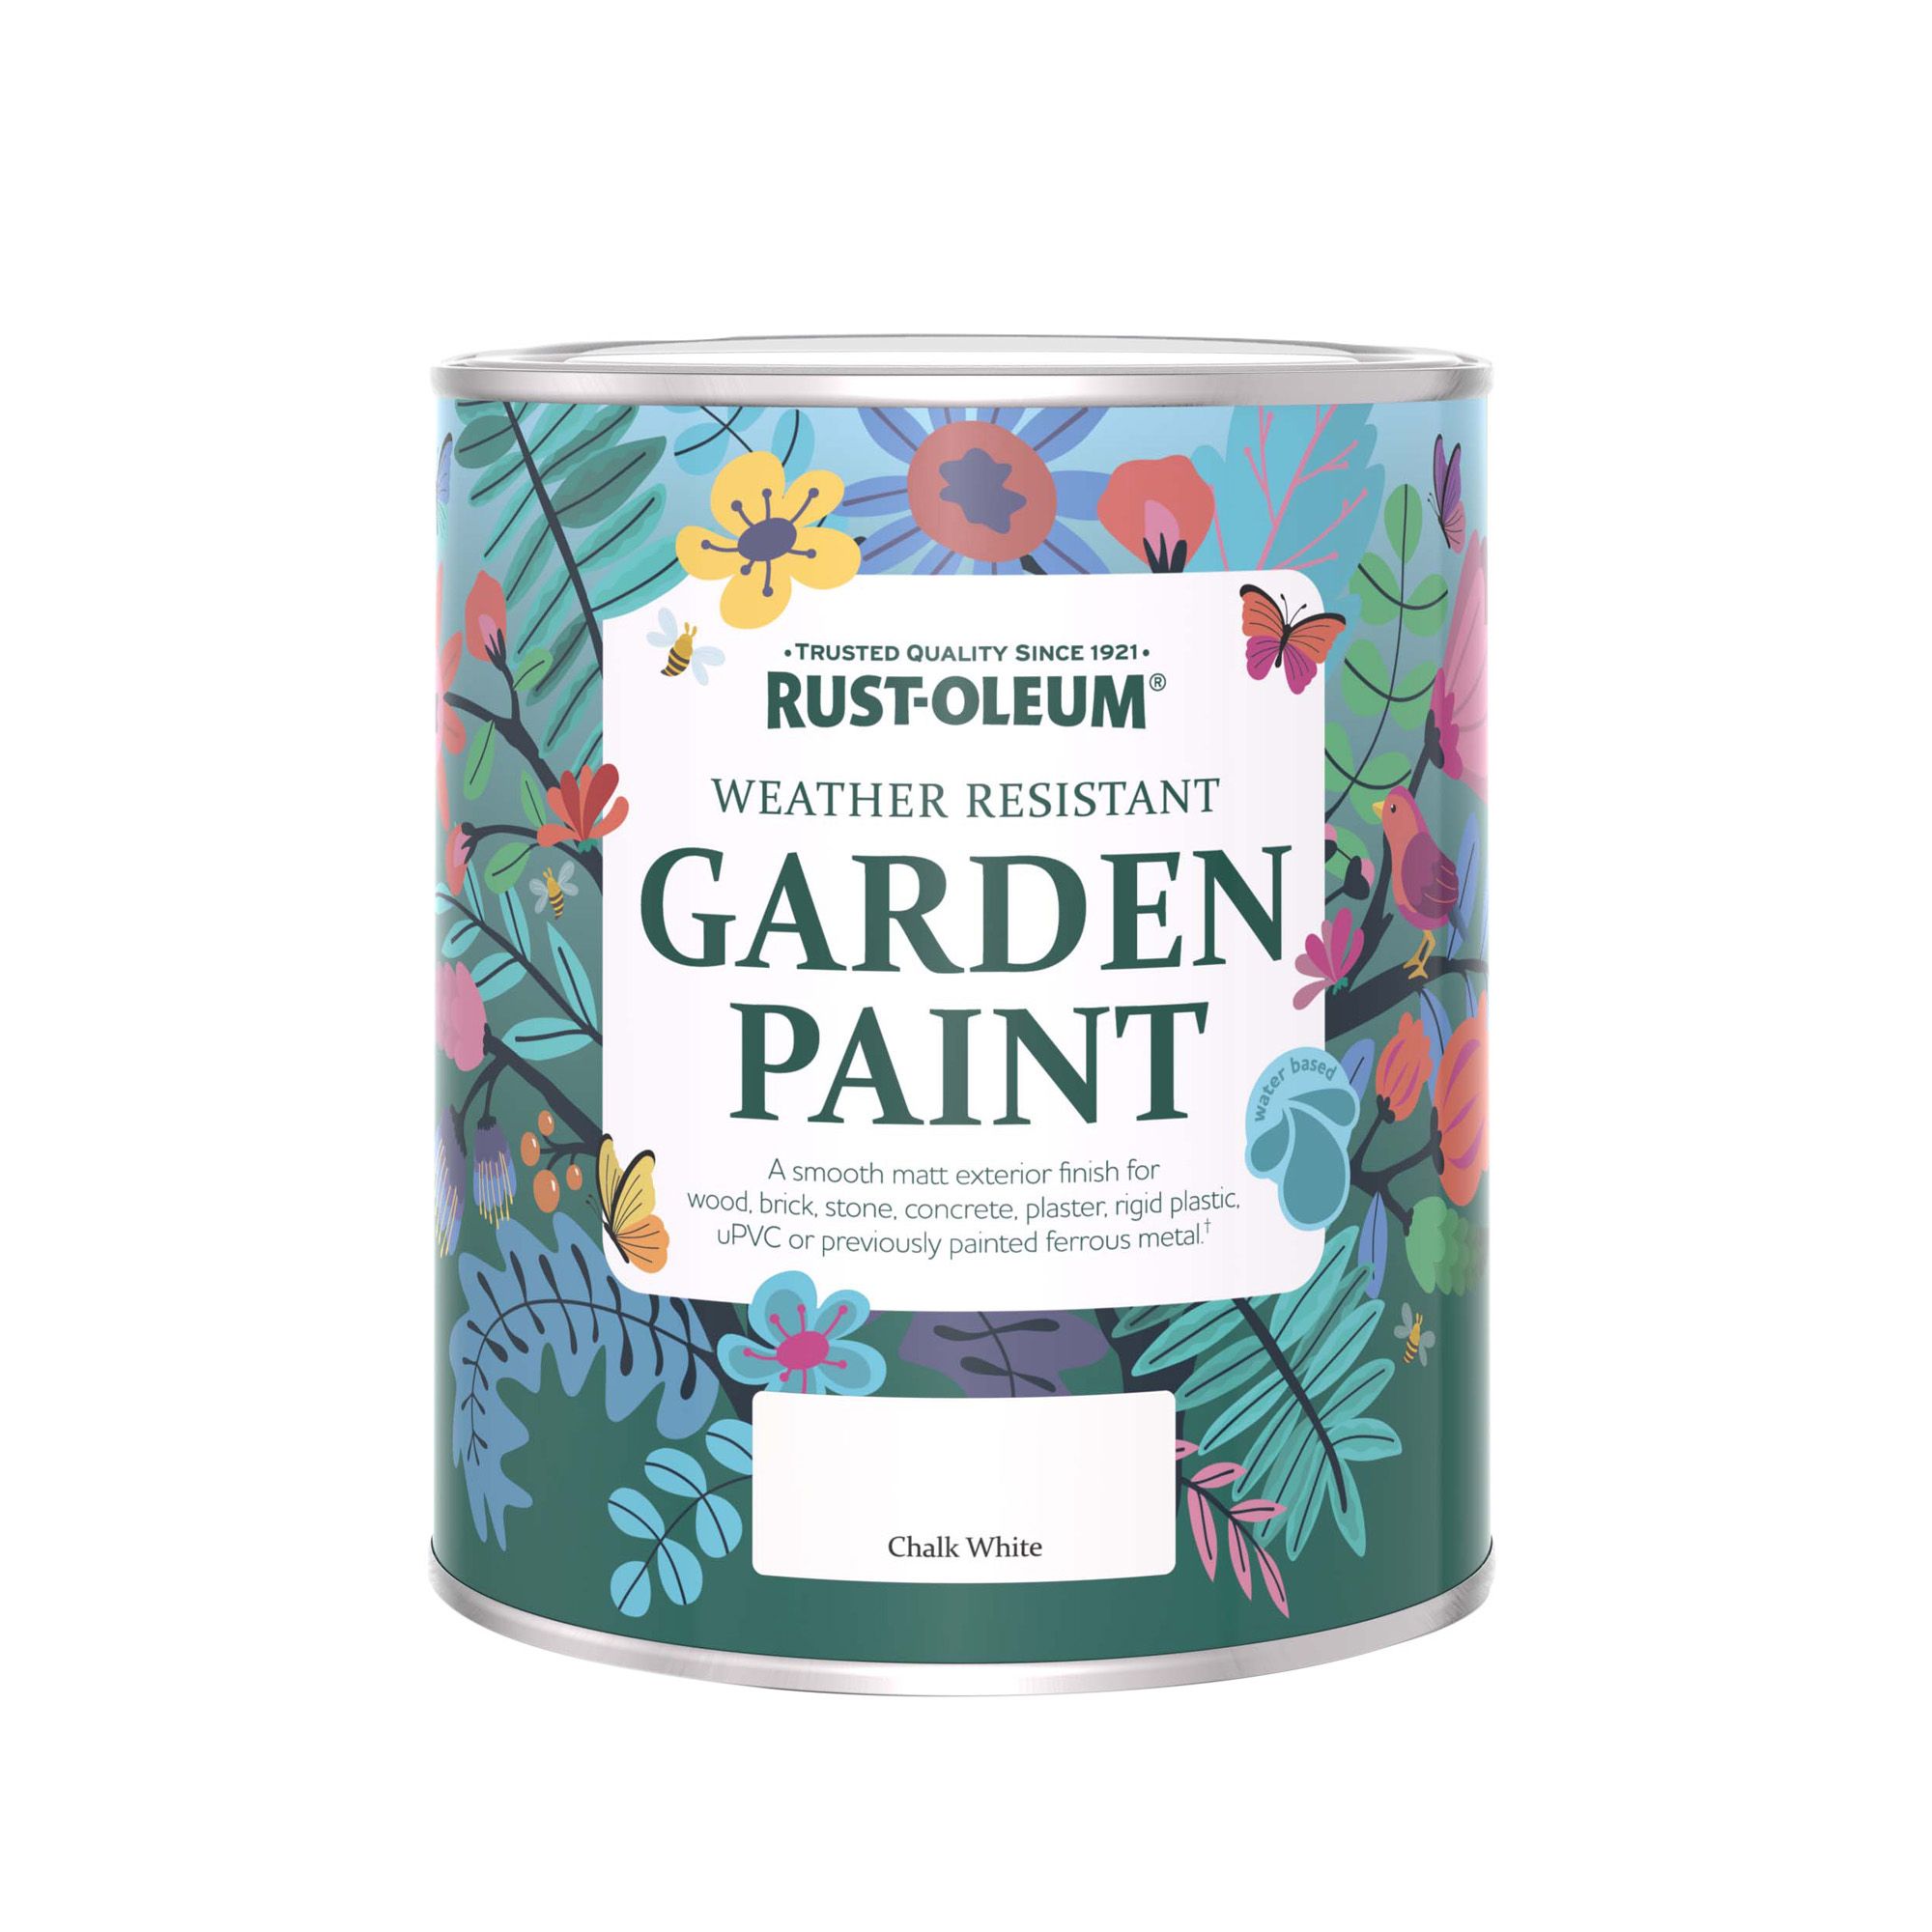 Rust-Oleum Garden Paint Chalk White Matt Multi-surface Garden Paint, 750ml Tin